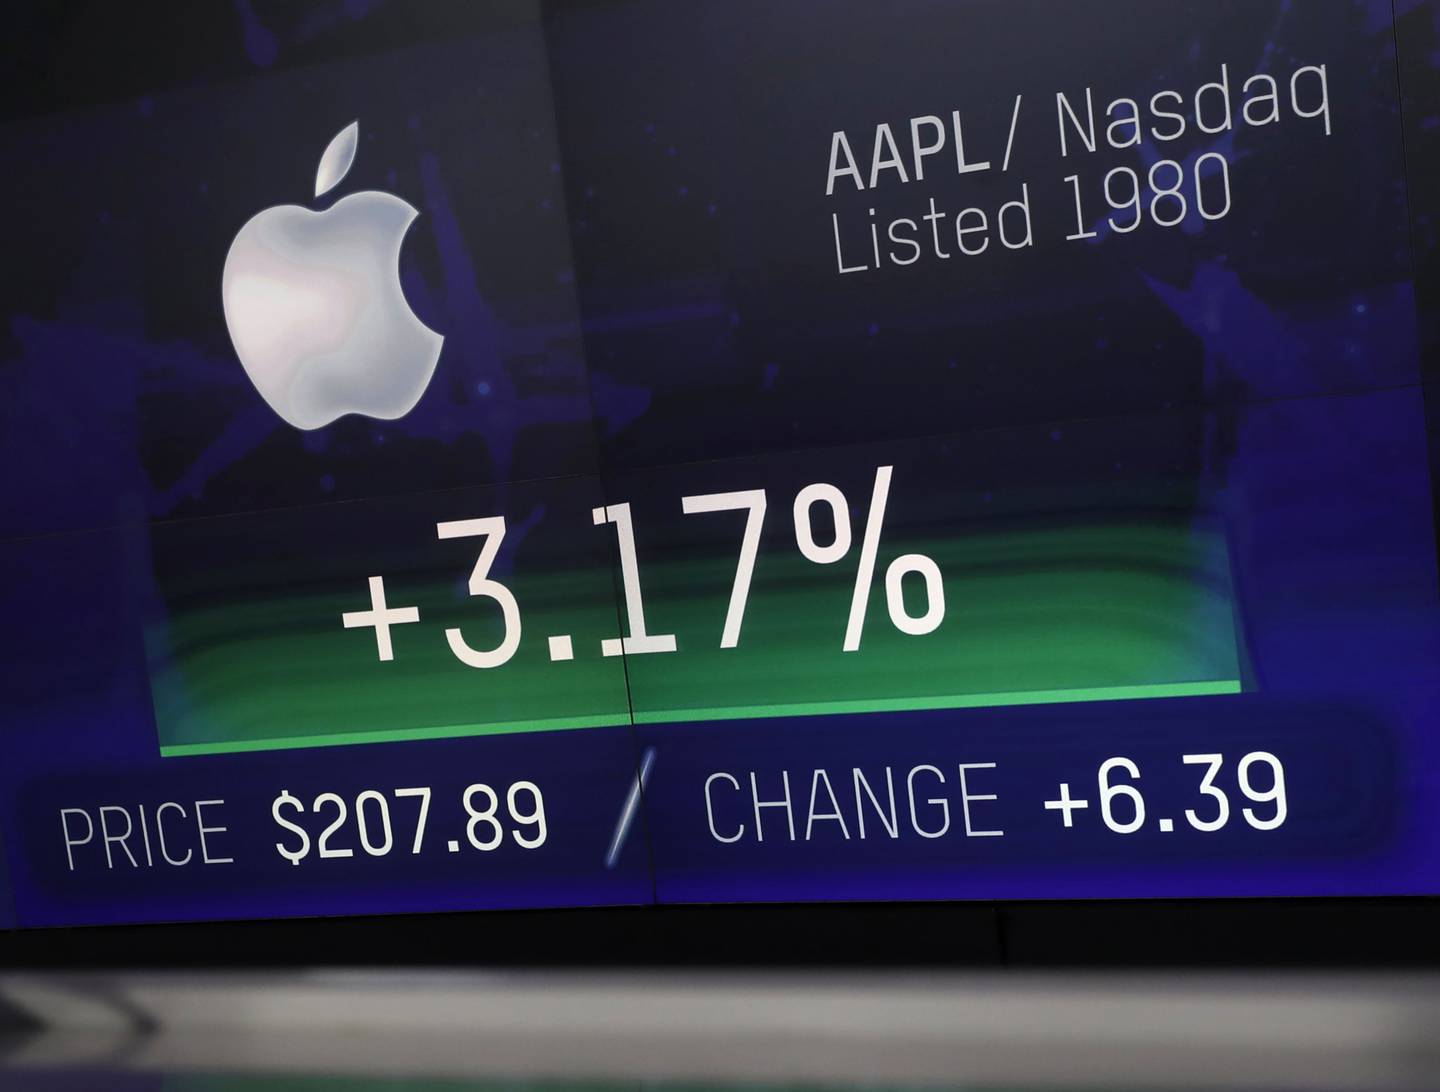 Las versiones falsas de Apple Inc. están entre las grandes acciones que han sido replicadas.